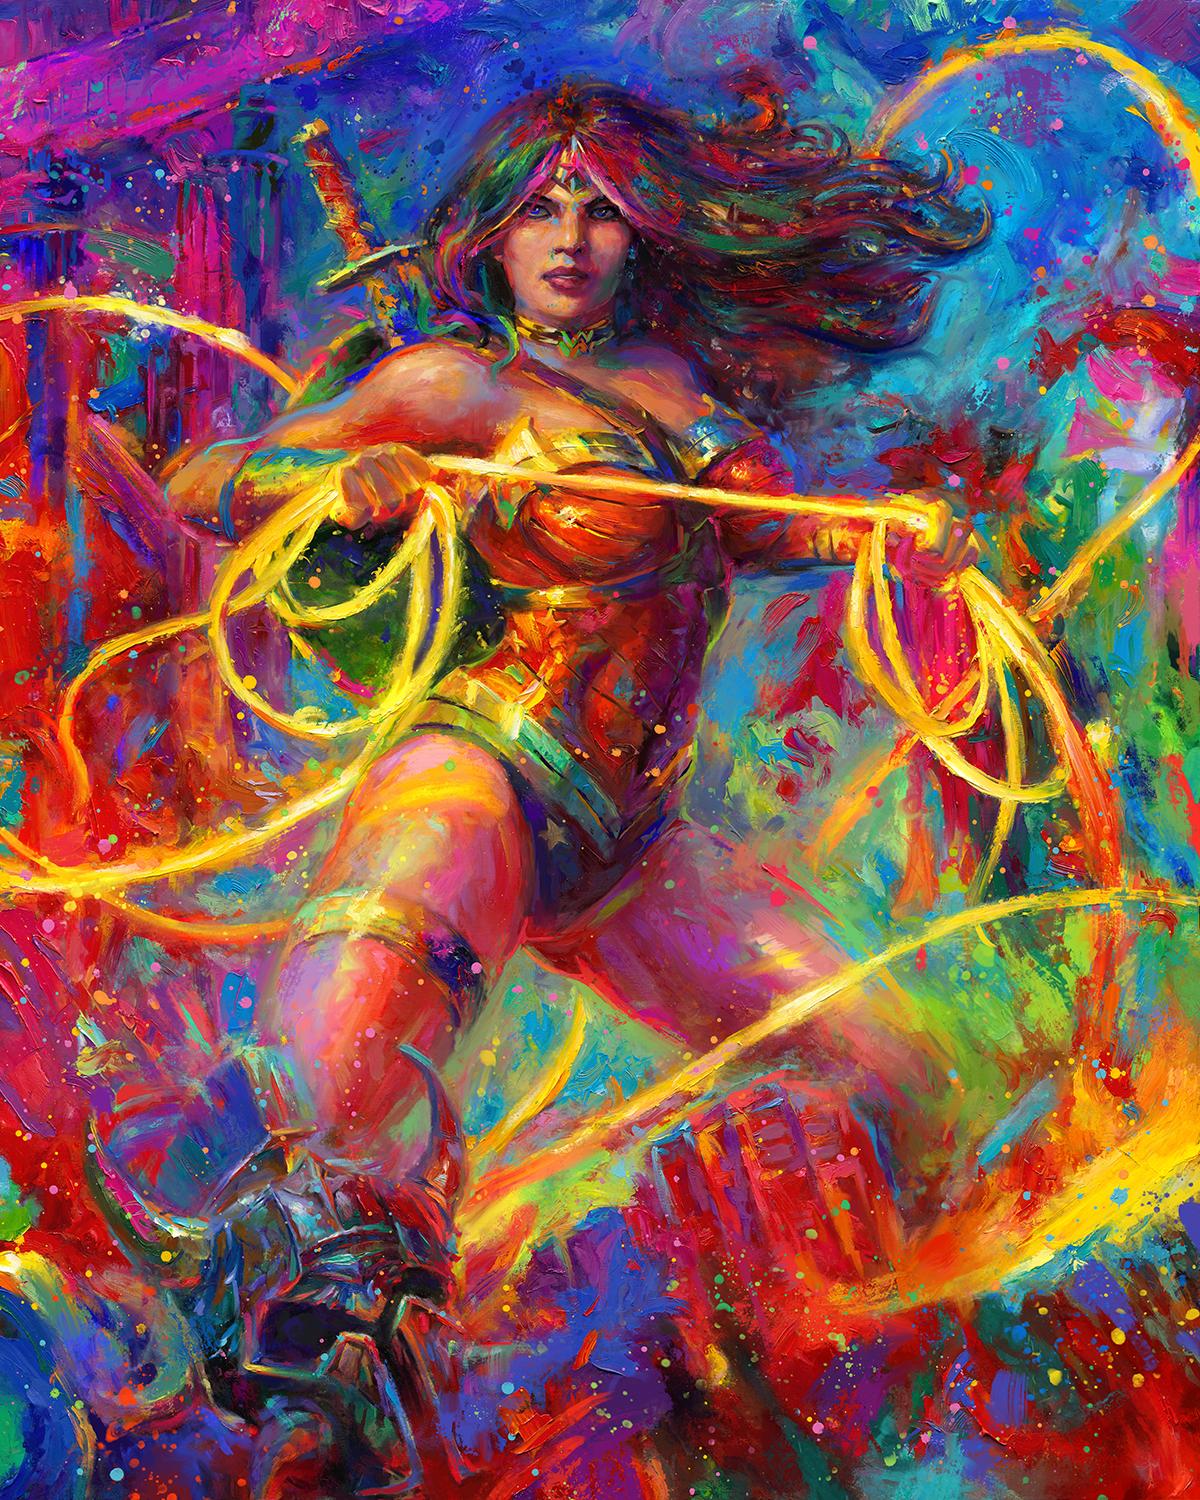 Dieses lizenzierte Blend Cota Öl auf Leinwand Gemälde von Wonder Women - Champion of Themyscria - Öl auf Leinwand wird durch Blend's eigene berühmte Kolorierungstechnik zum Leben erweckt. Dieses Gemälde fängt ein, was Wonder Women  zum Leben